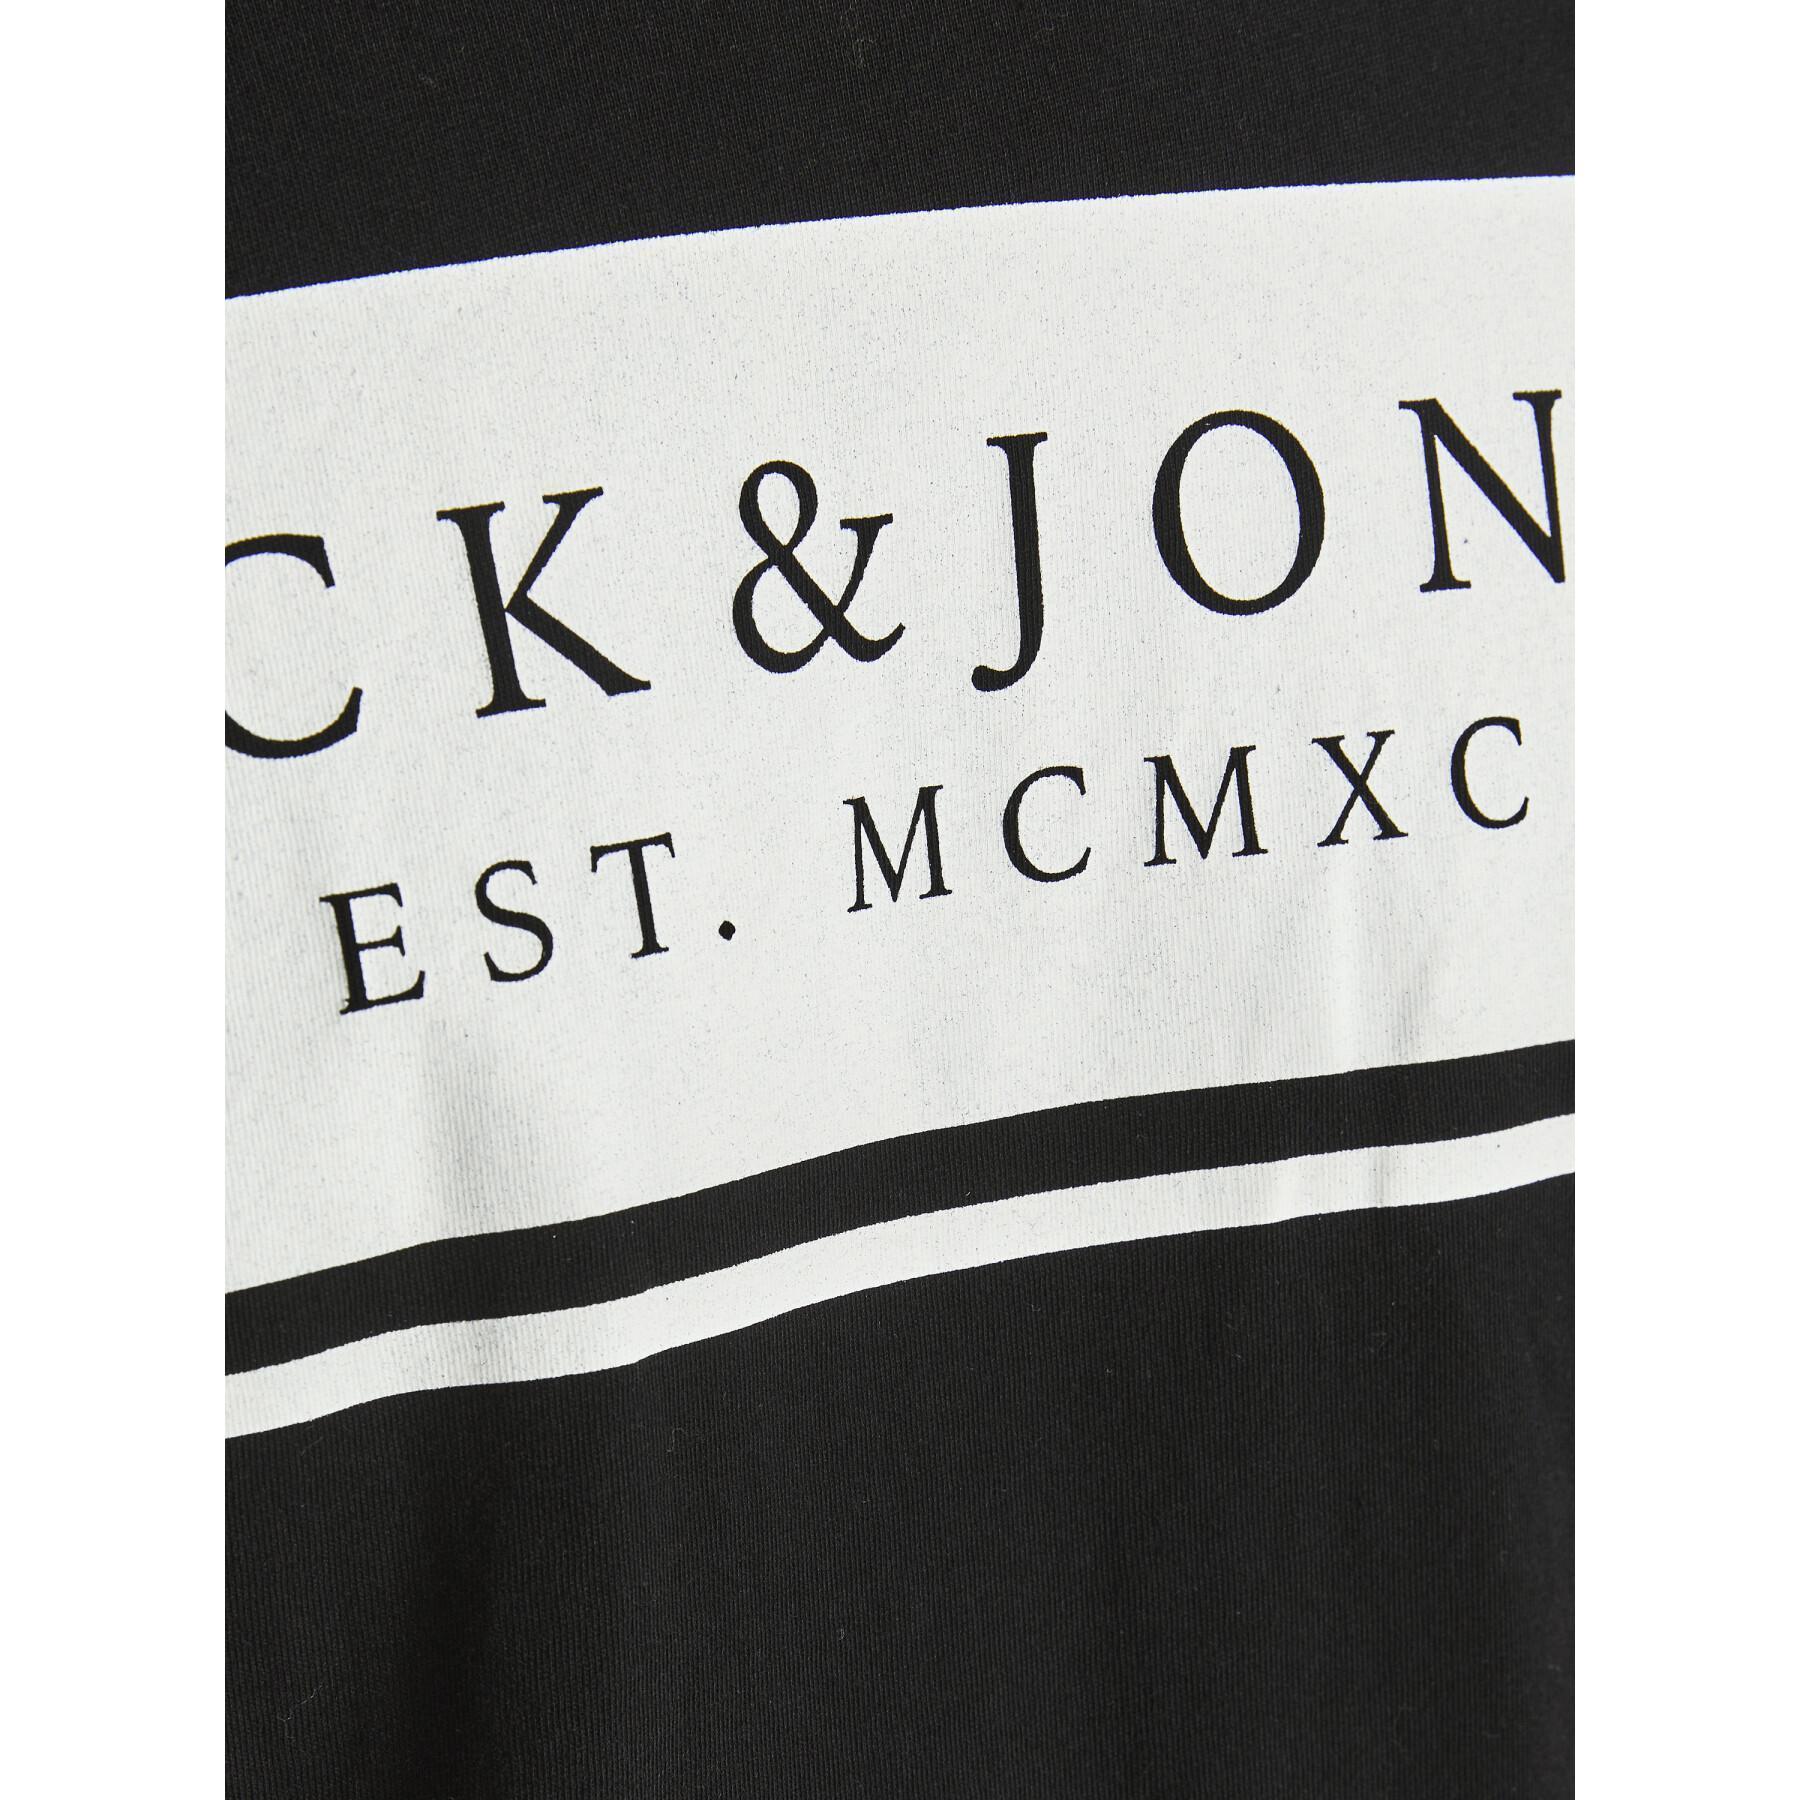 Kurzarm-T-Shirt Jack & Jones Jjriver